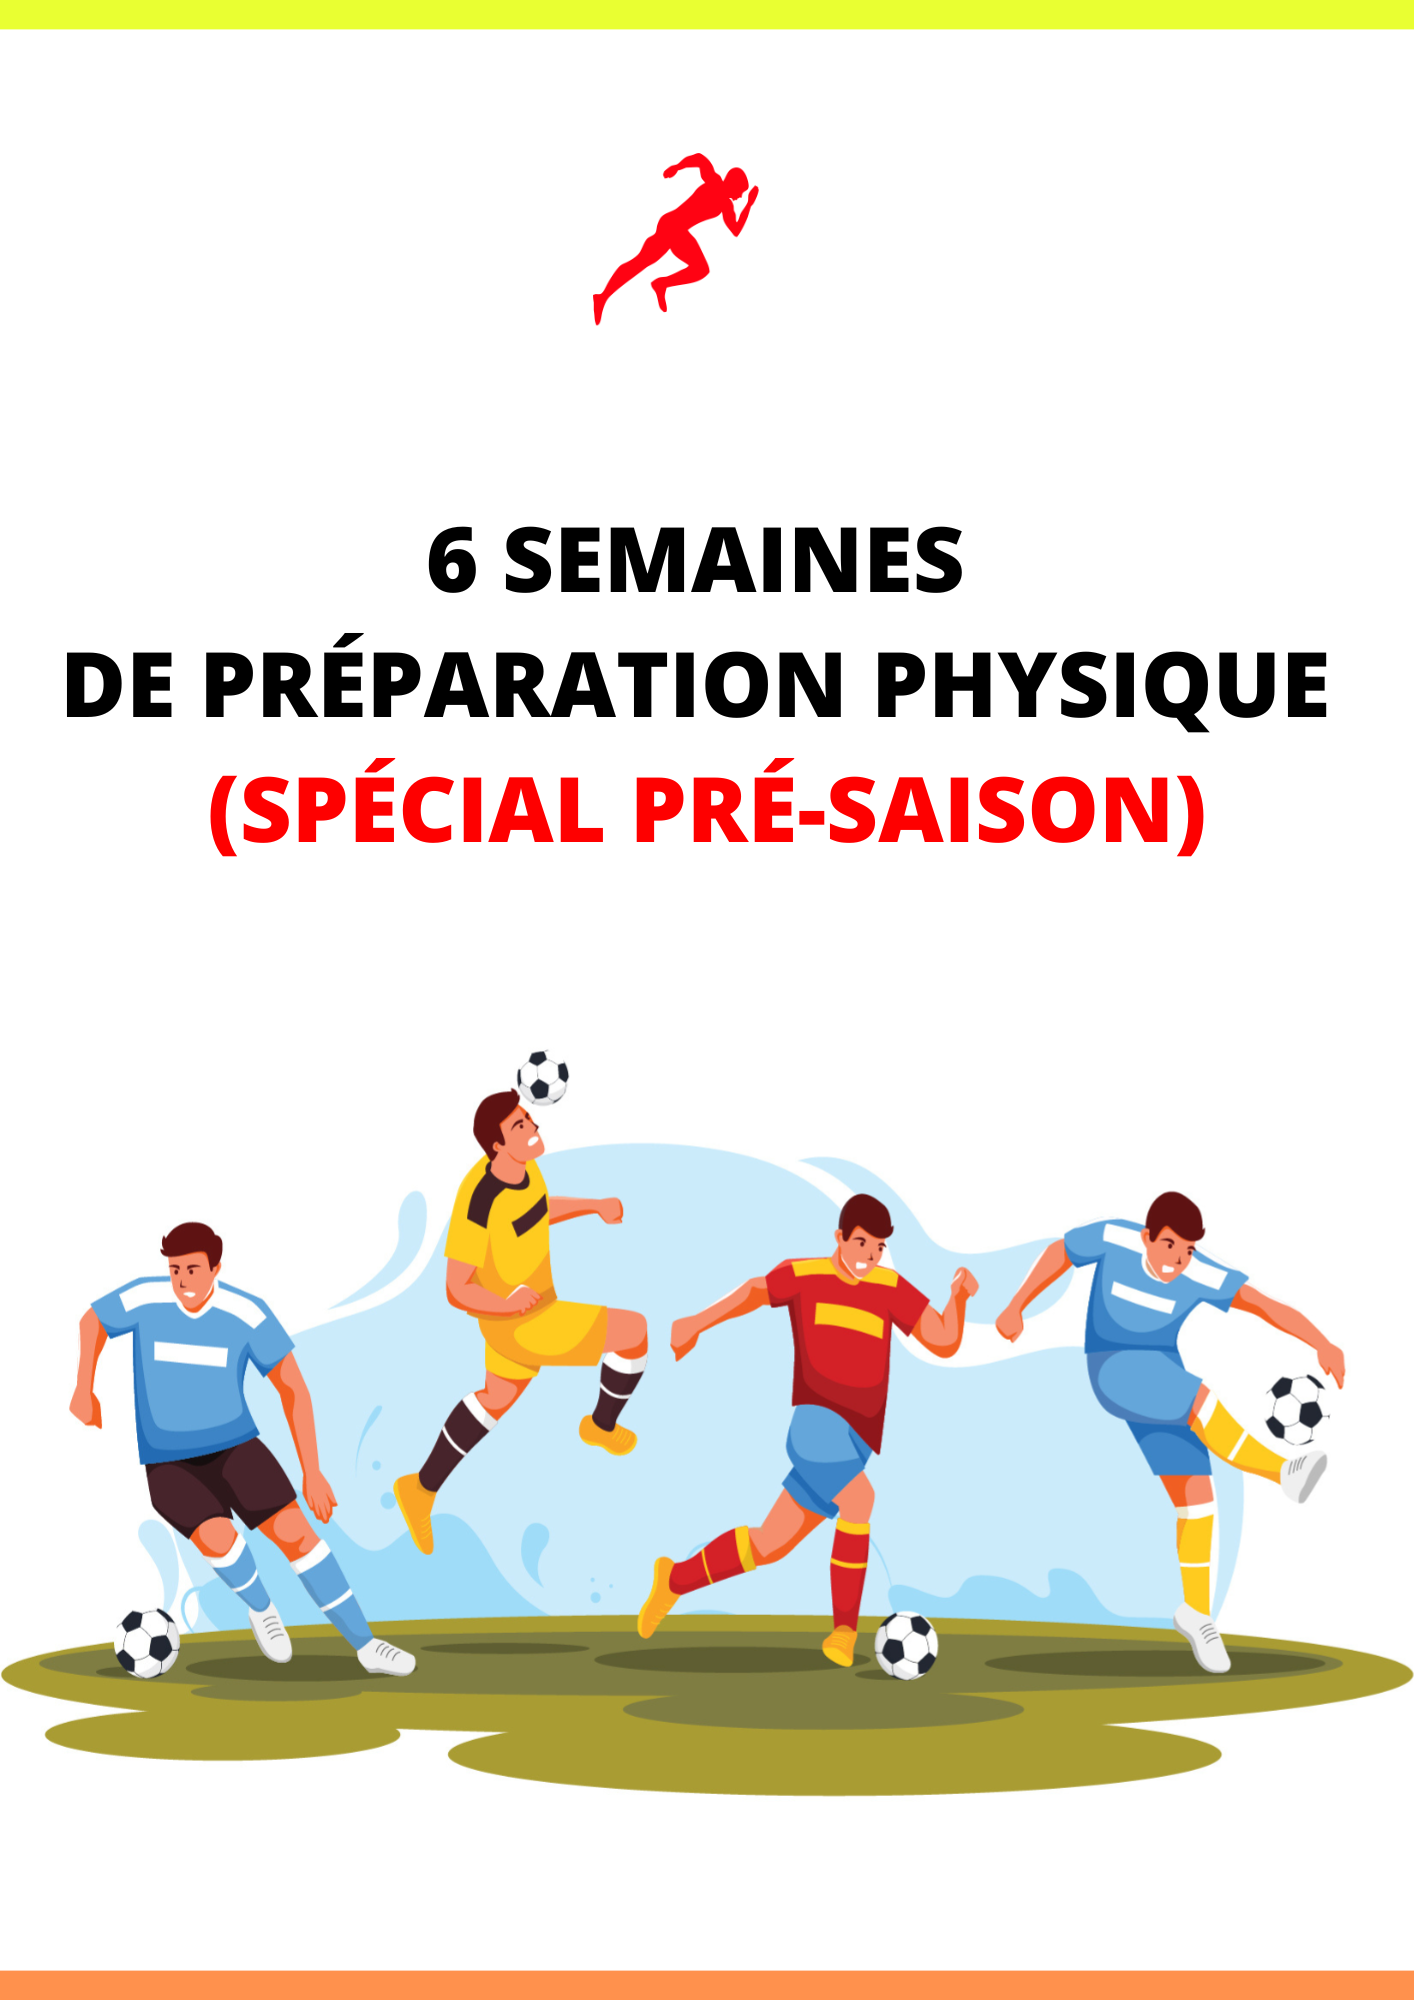 PROGRAMME DE PRÉ-SAISON SUR 6 SEMAINES EN FOOTBALL AMATEUR